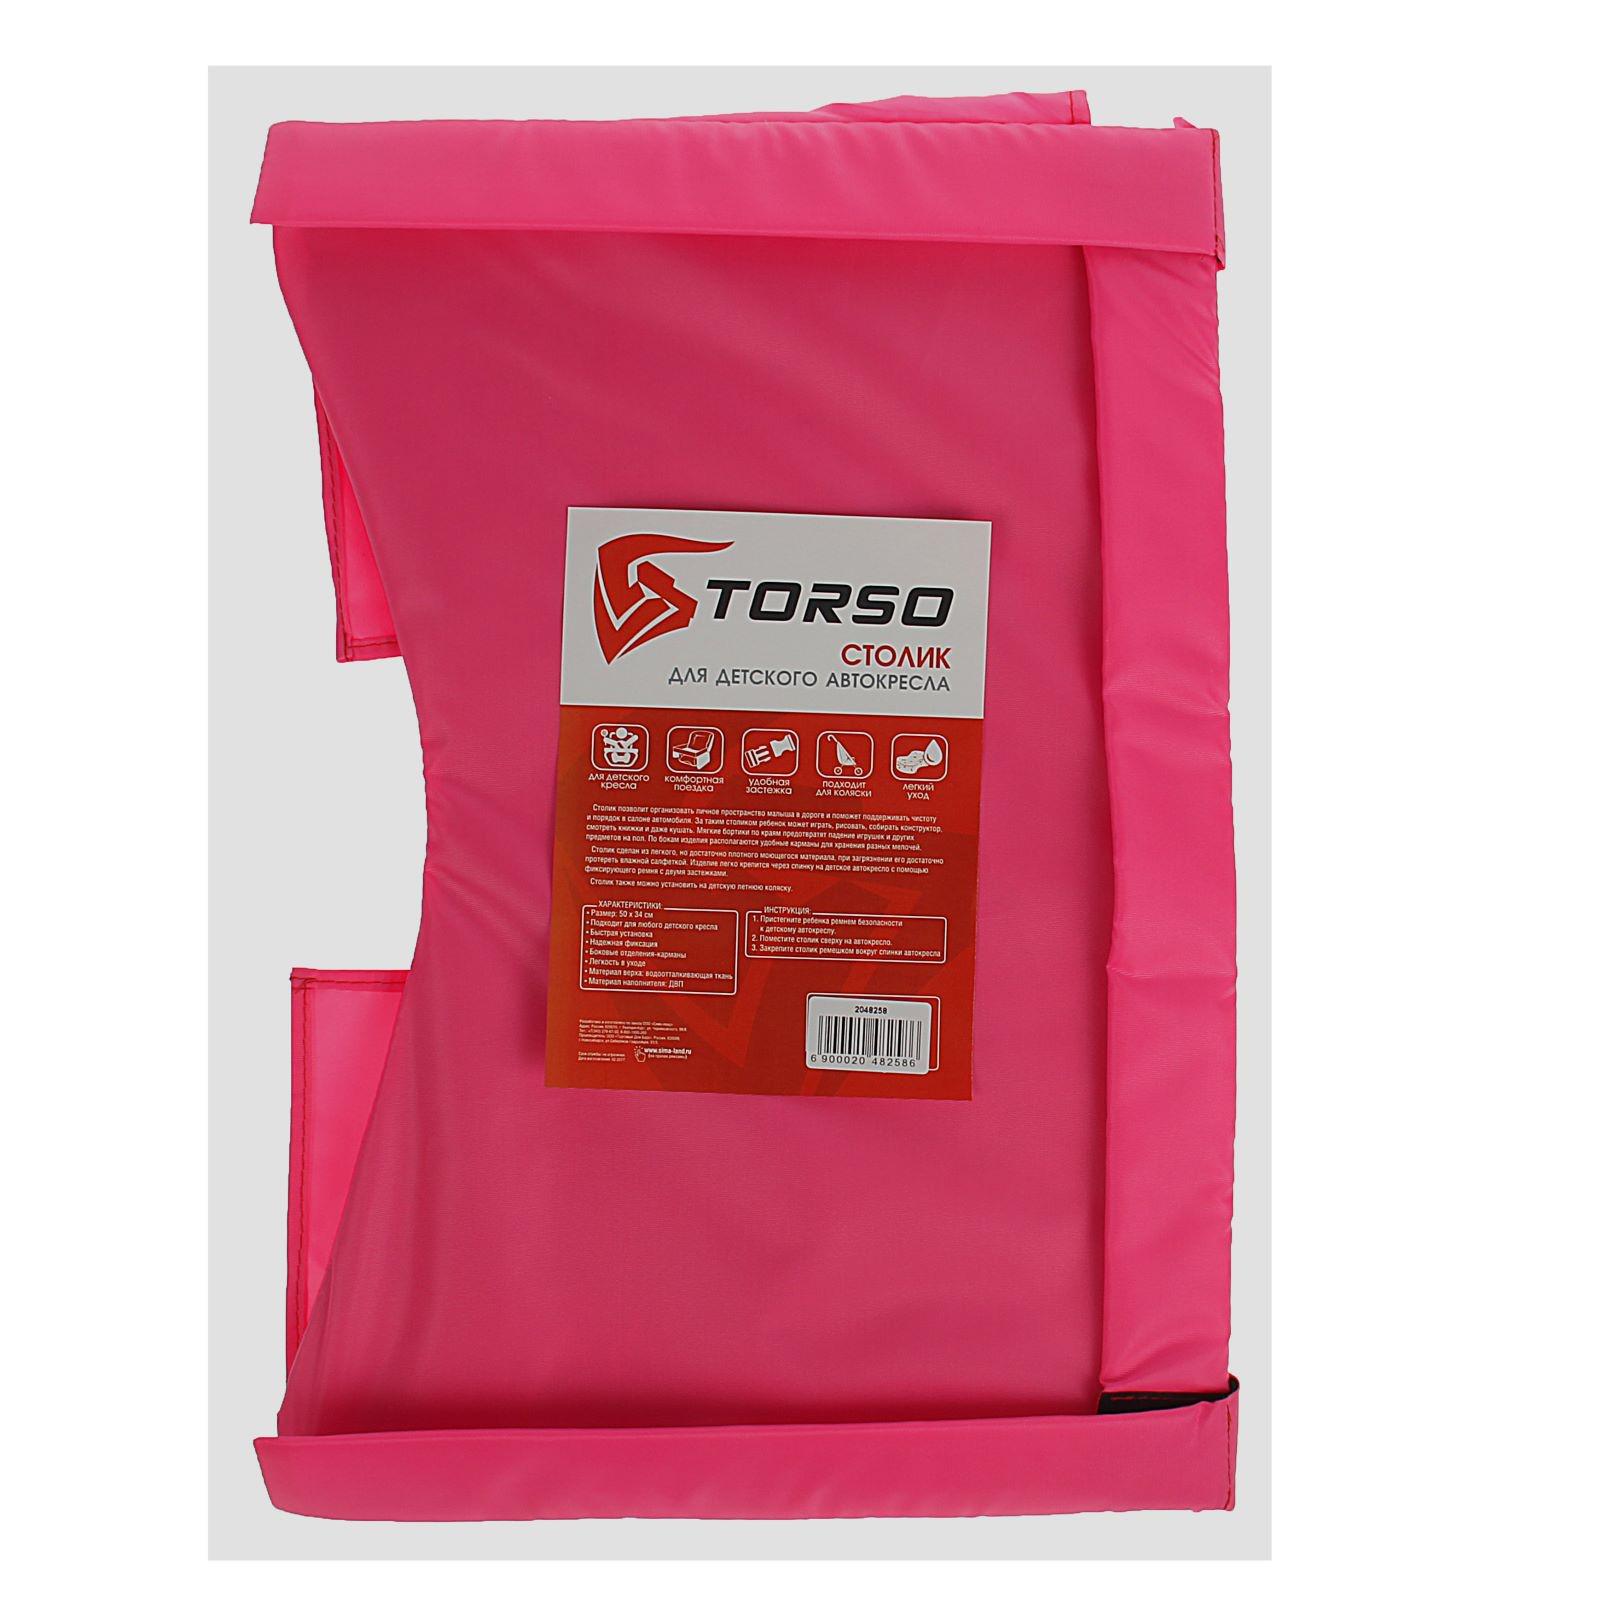 Столик-органайзер TORSO для детского автокресла розовый 35 х 50 см 2048258 - фото 7